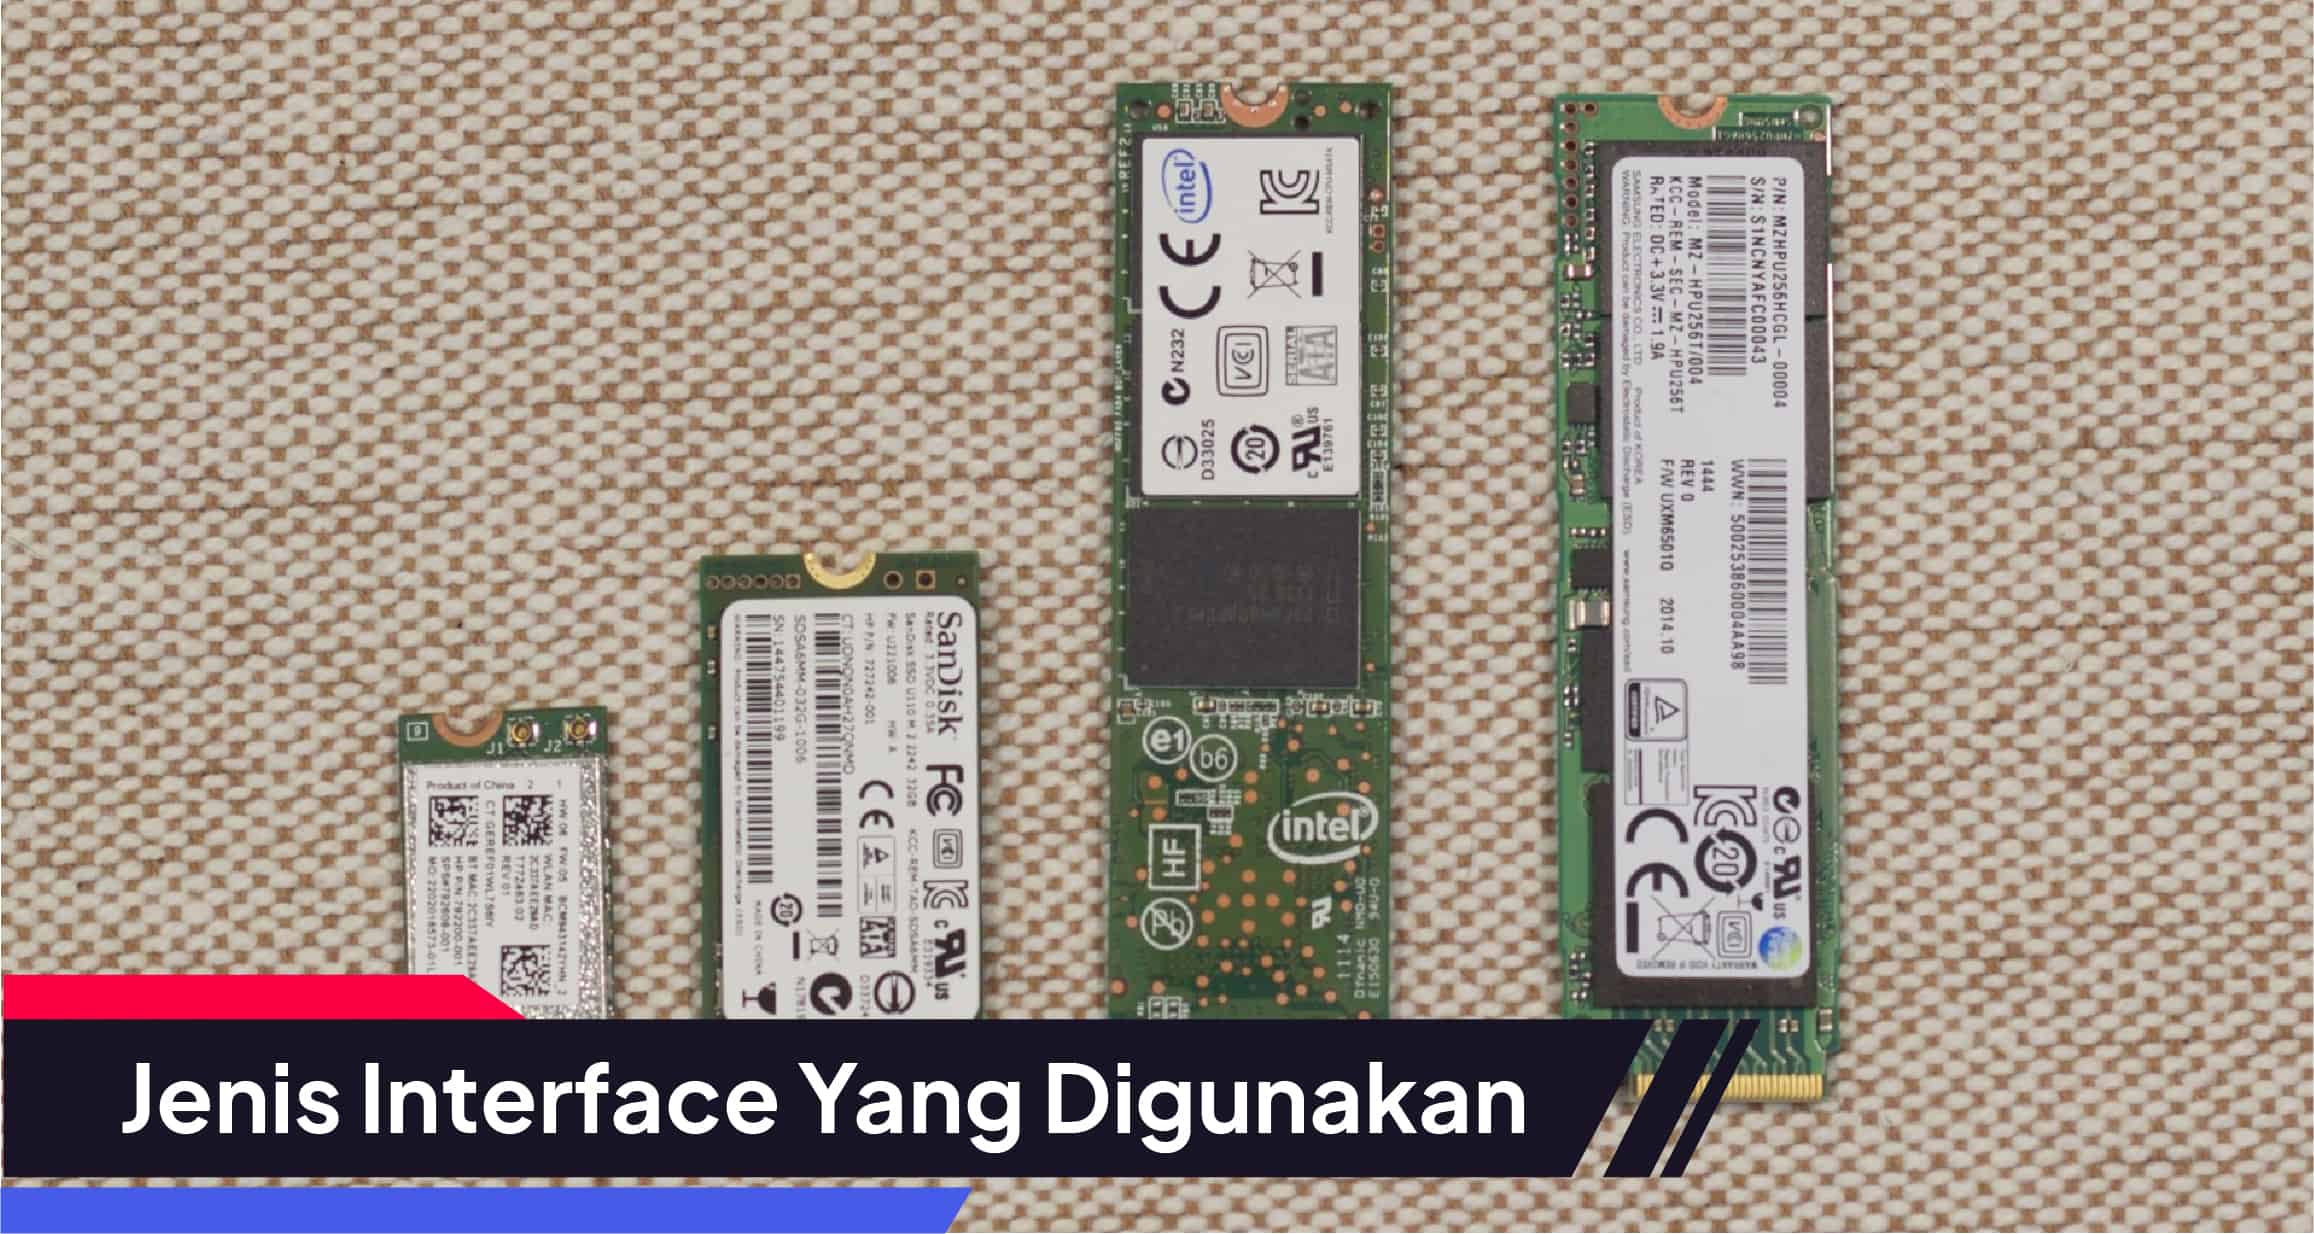 Toko Storage - Tips Memilih SSD Terbaik : Jenis Interface Yang Digunakan